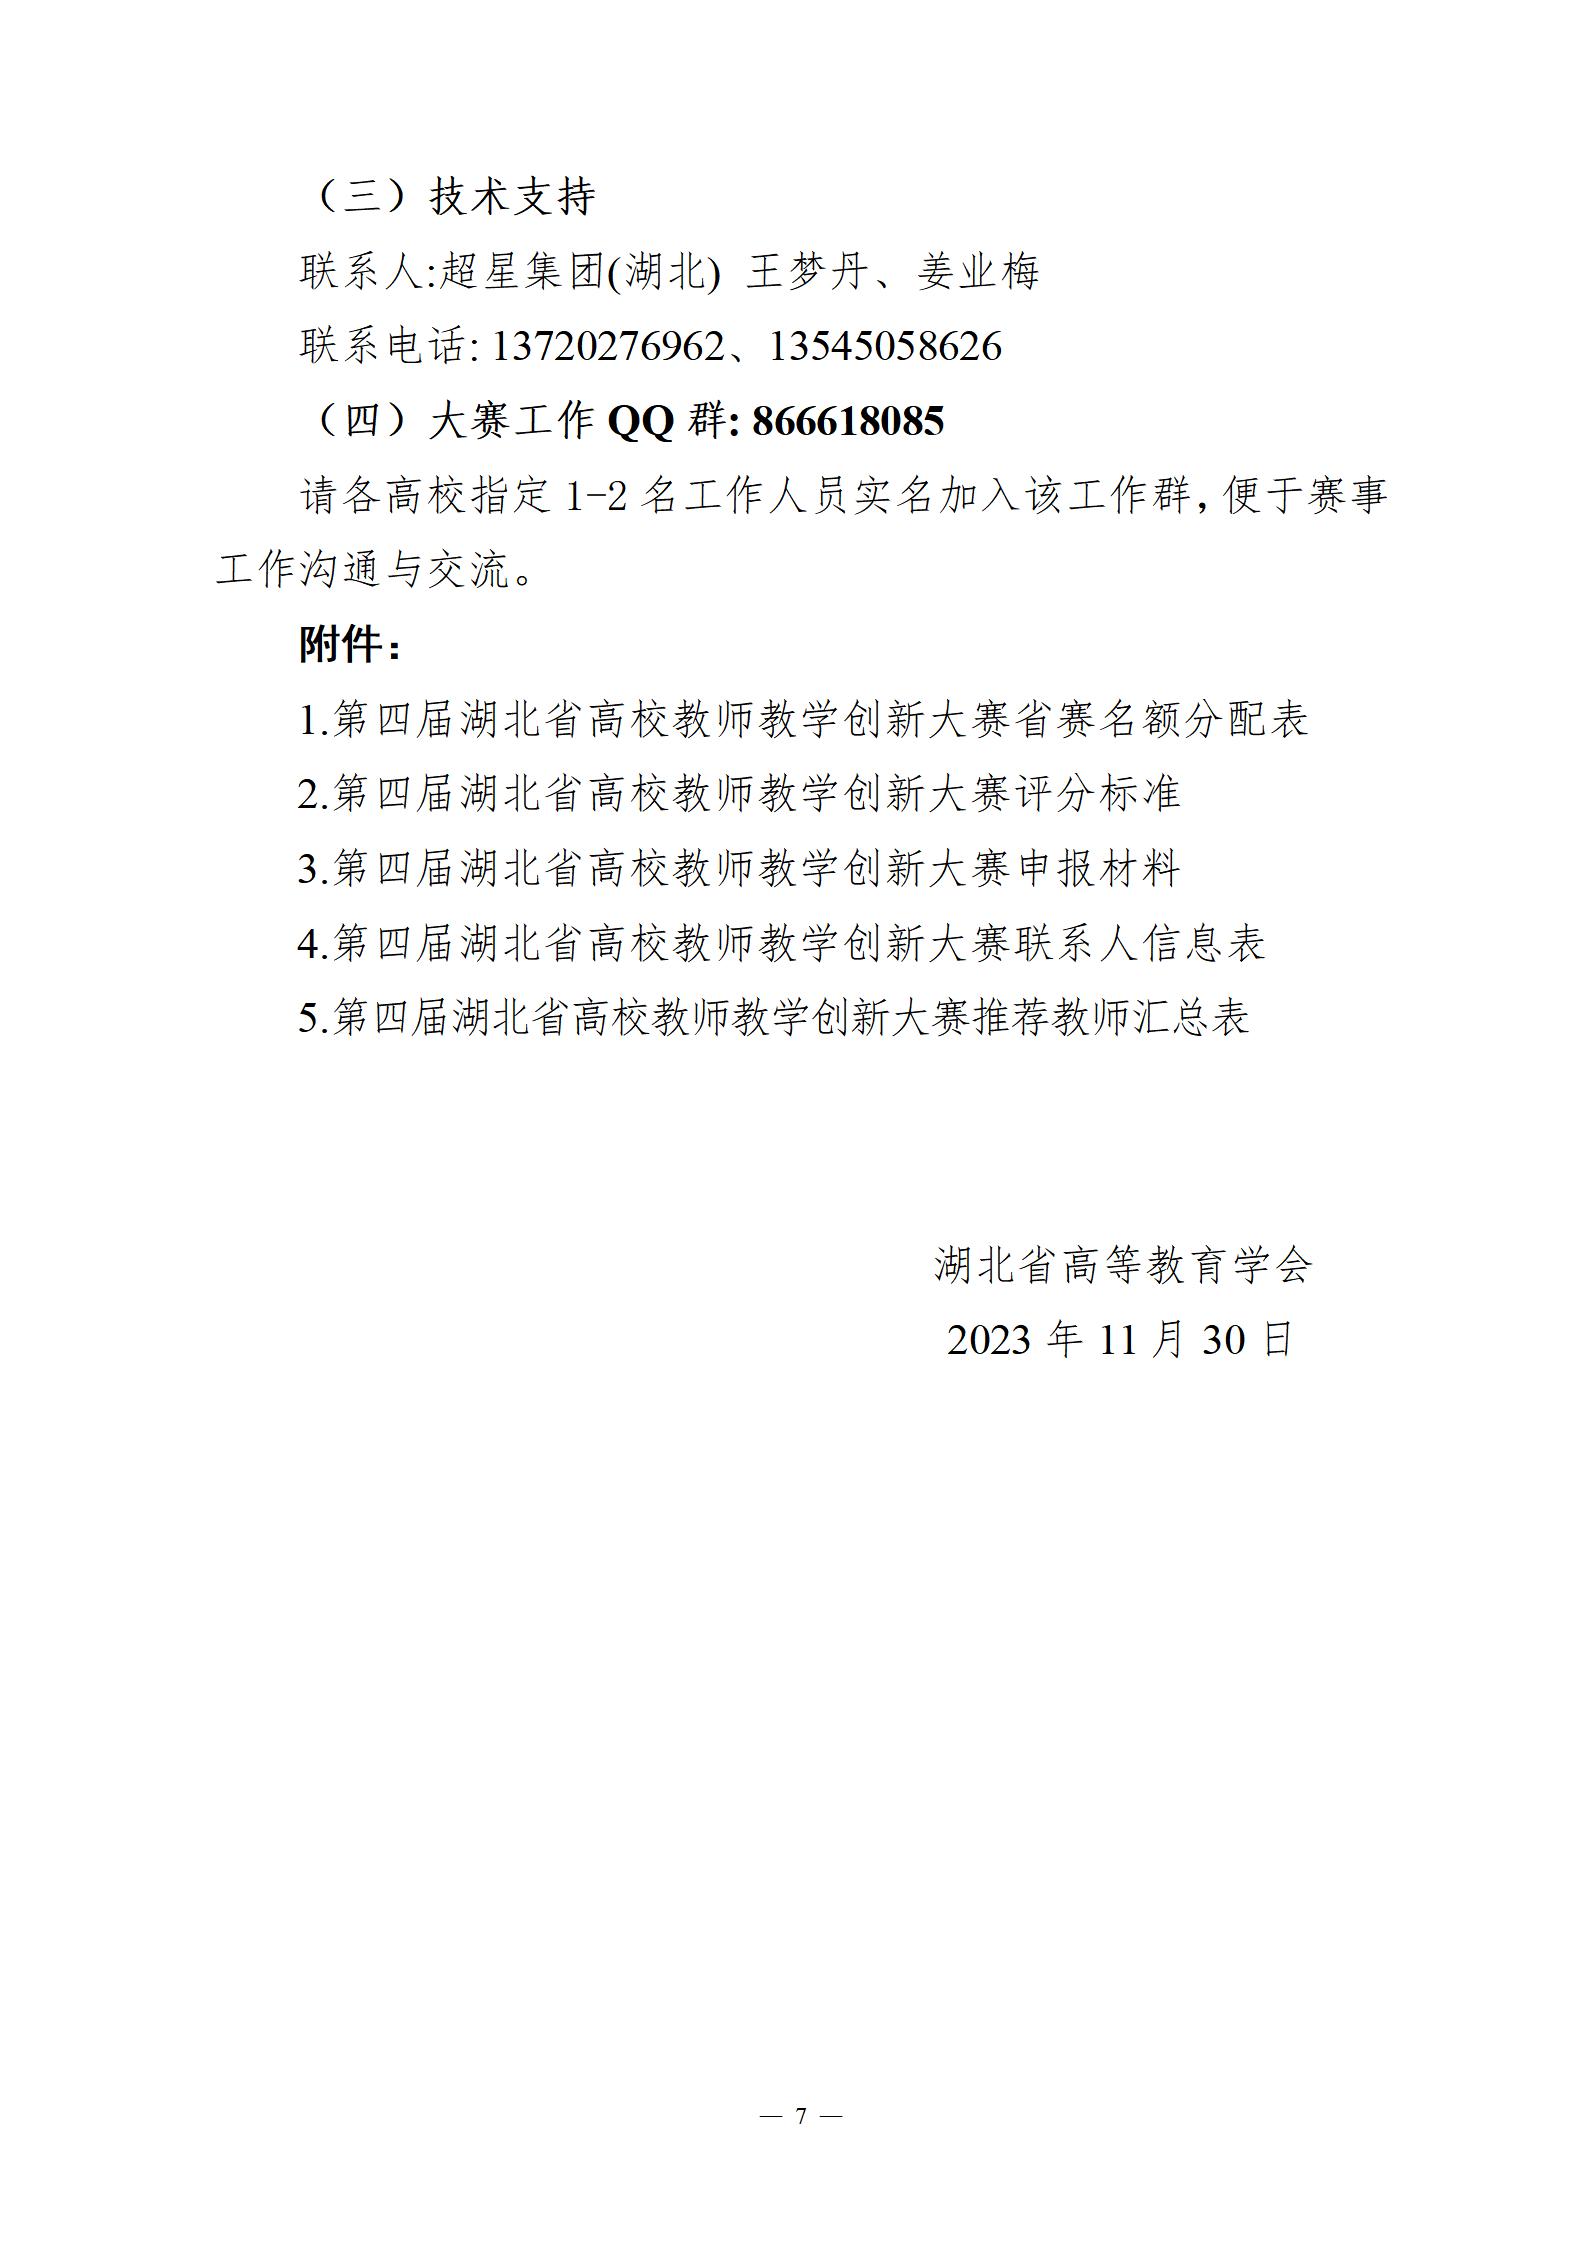 关于举办第四届湖北省高校教师教学创新大赛的通知_07.jpg